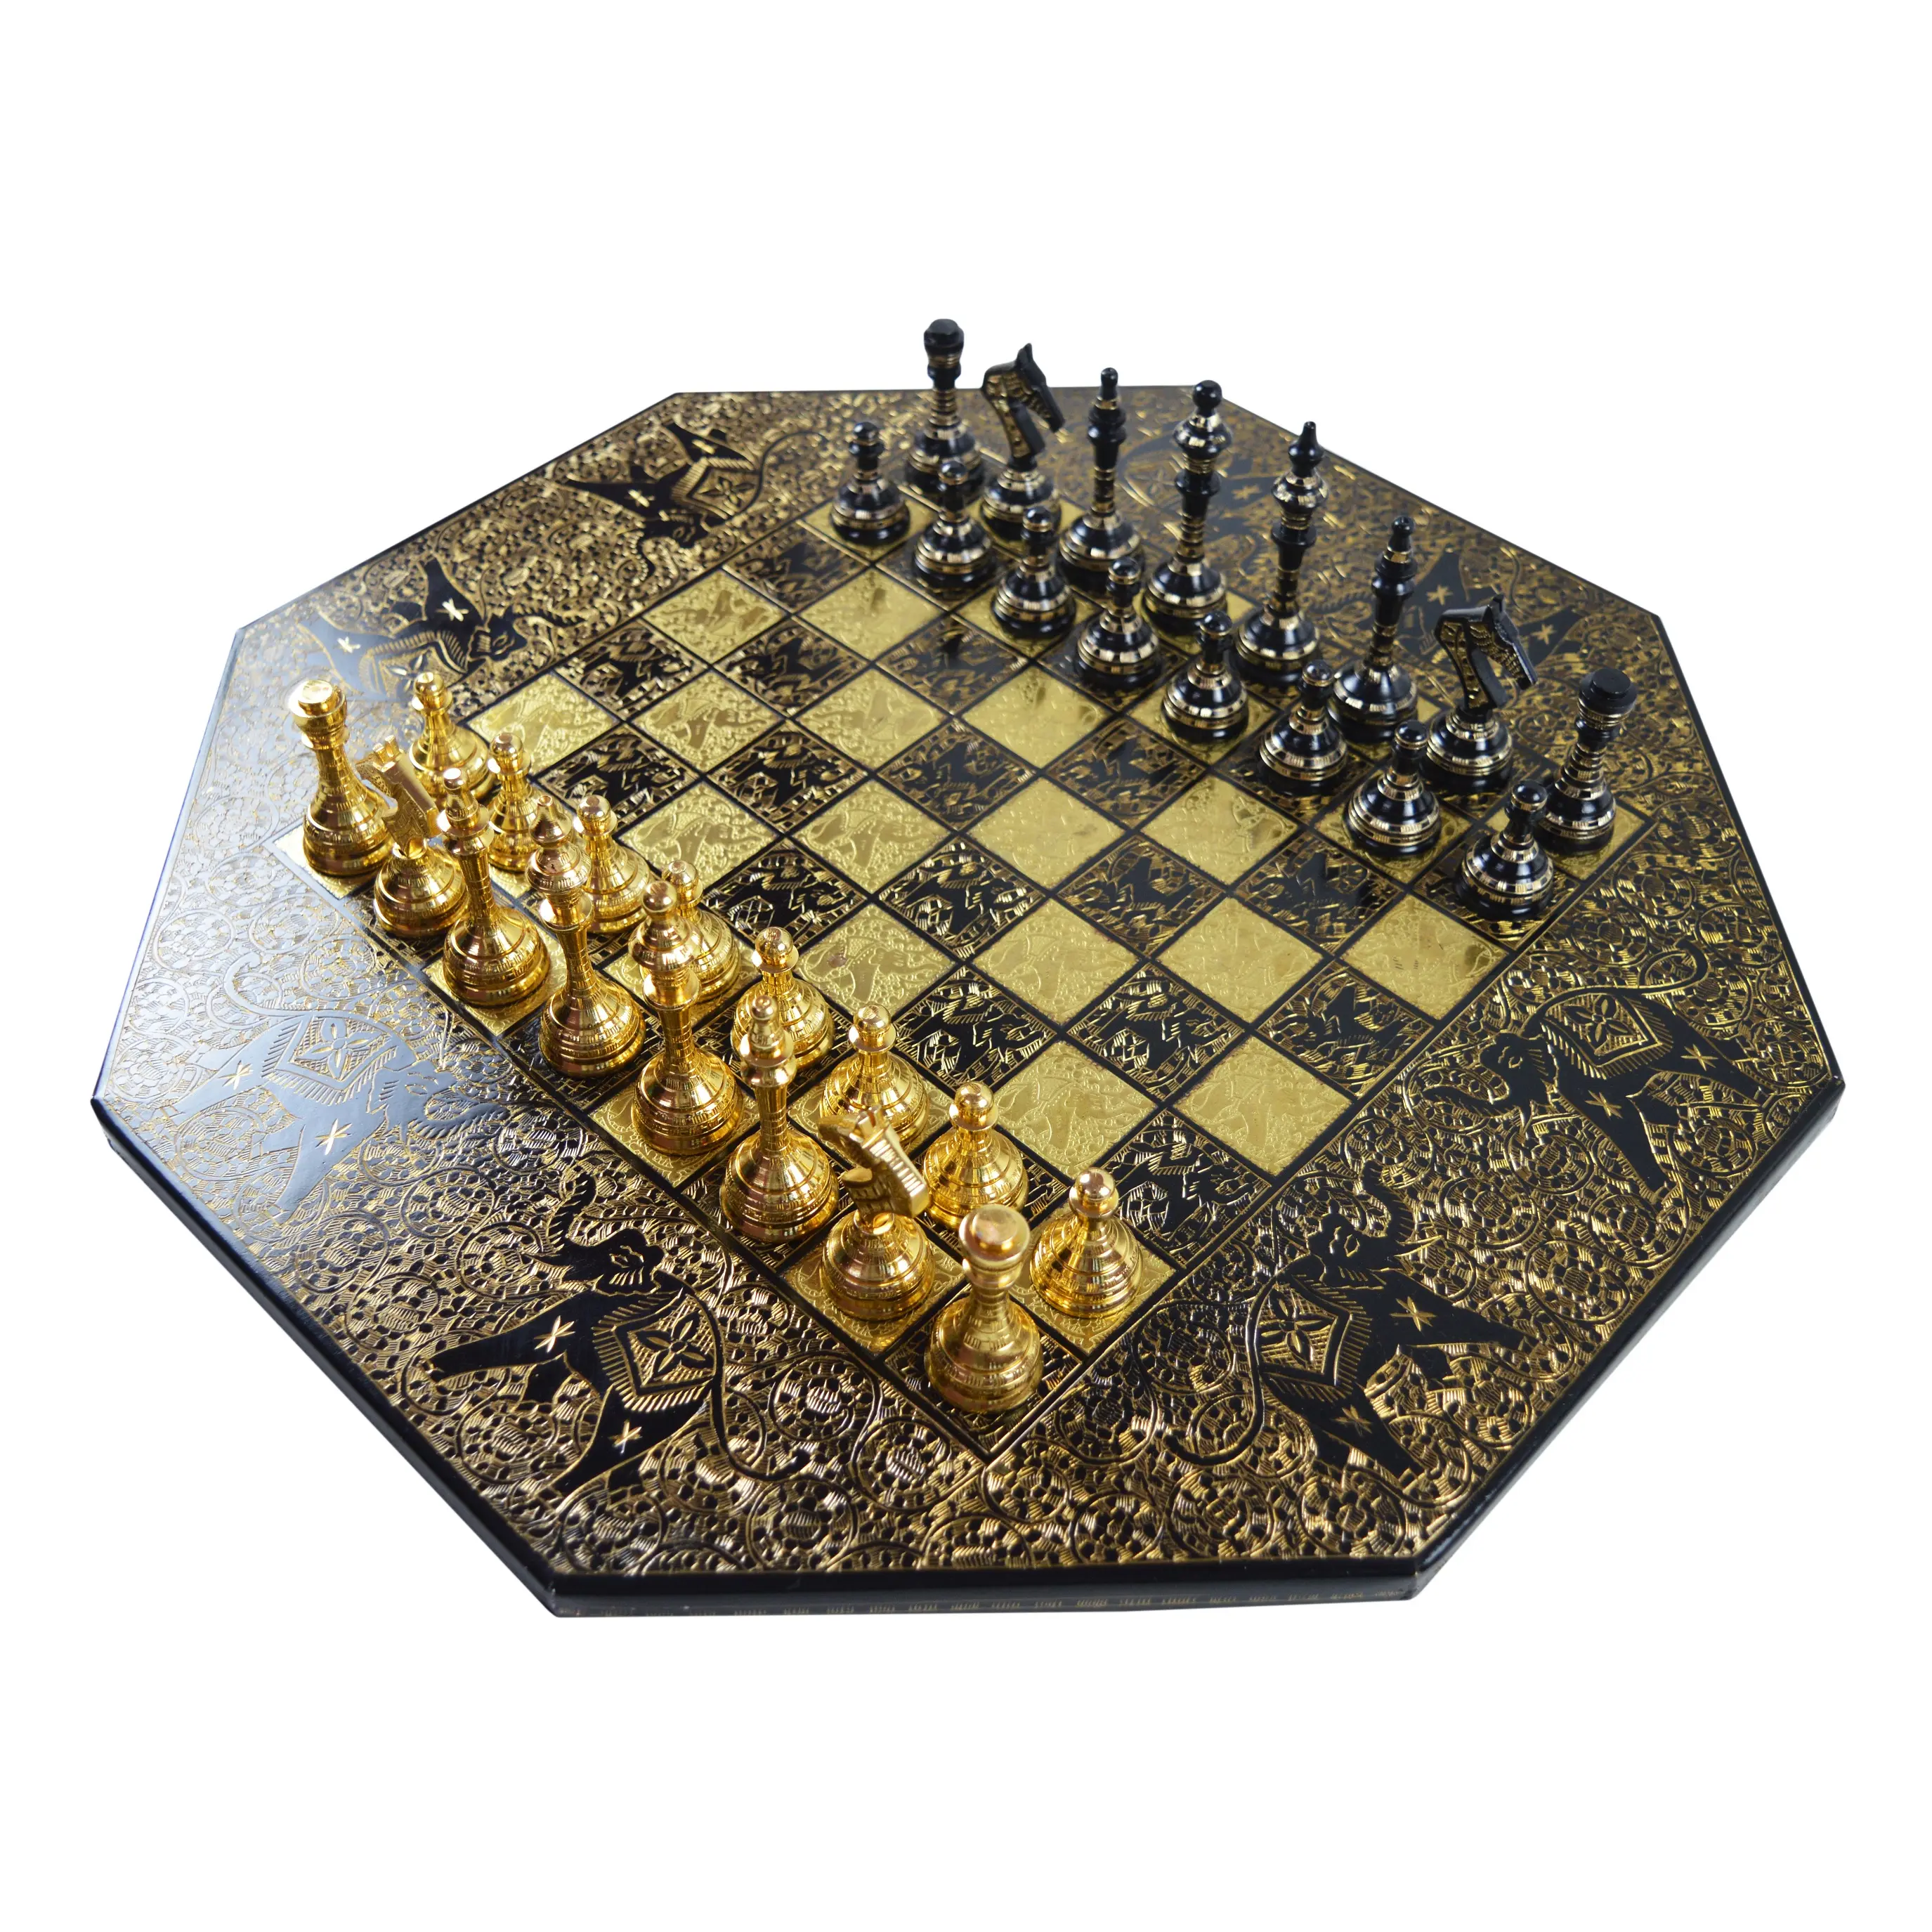 لوحة شطرنج بتصميم جميل مع قطع شطرنج معدنية جذابة ، لعبة شطرنج خشبية لامعة بألوان تقليدية ومطلية